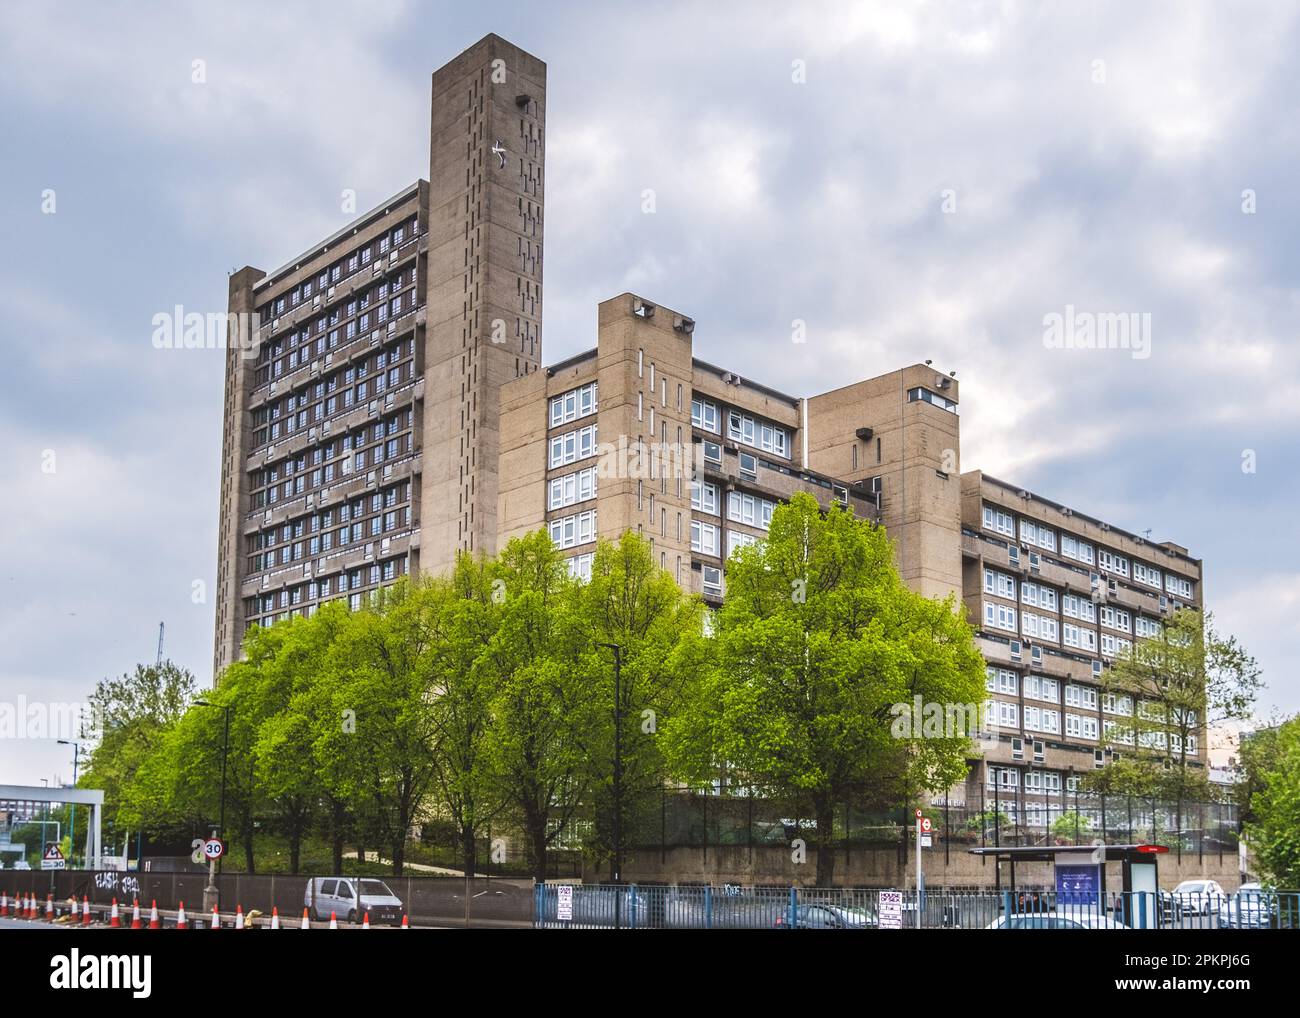 Vue en angle de la tour Balfron et de la maison de Carradale, deux tours brutalistes conçues par l'architecte Erno Goldfinger situé à Poplar East London. Banque D'Images